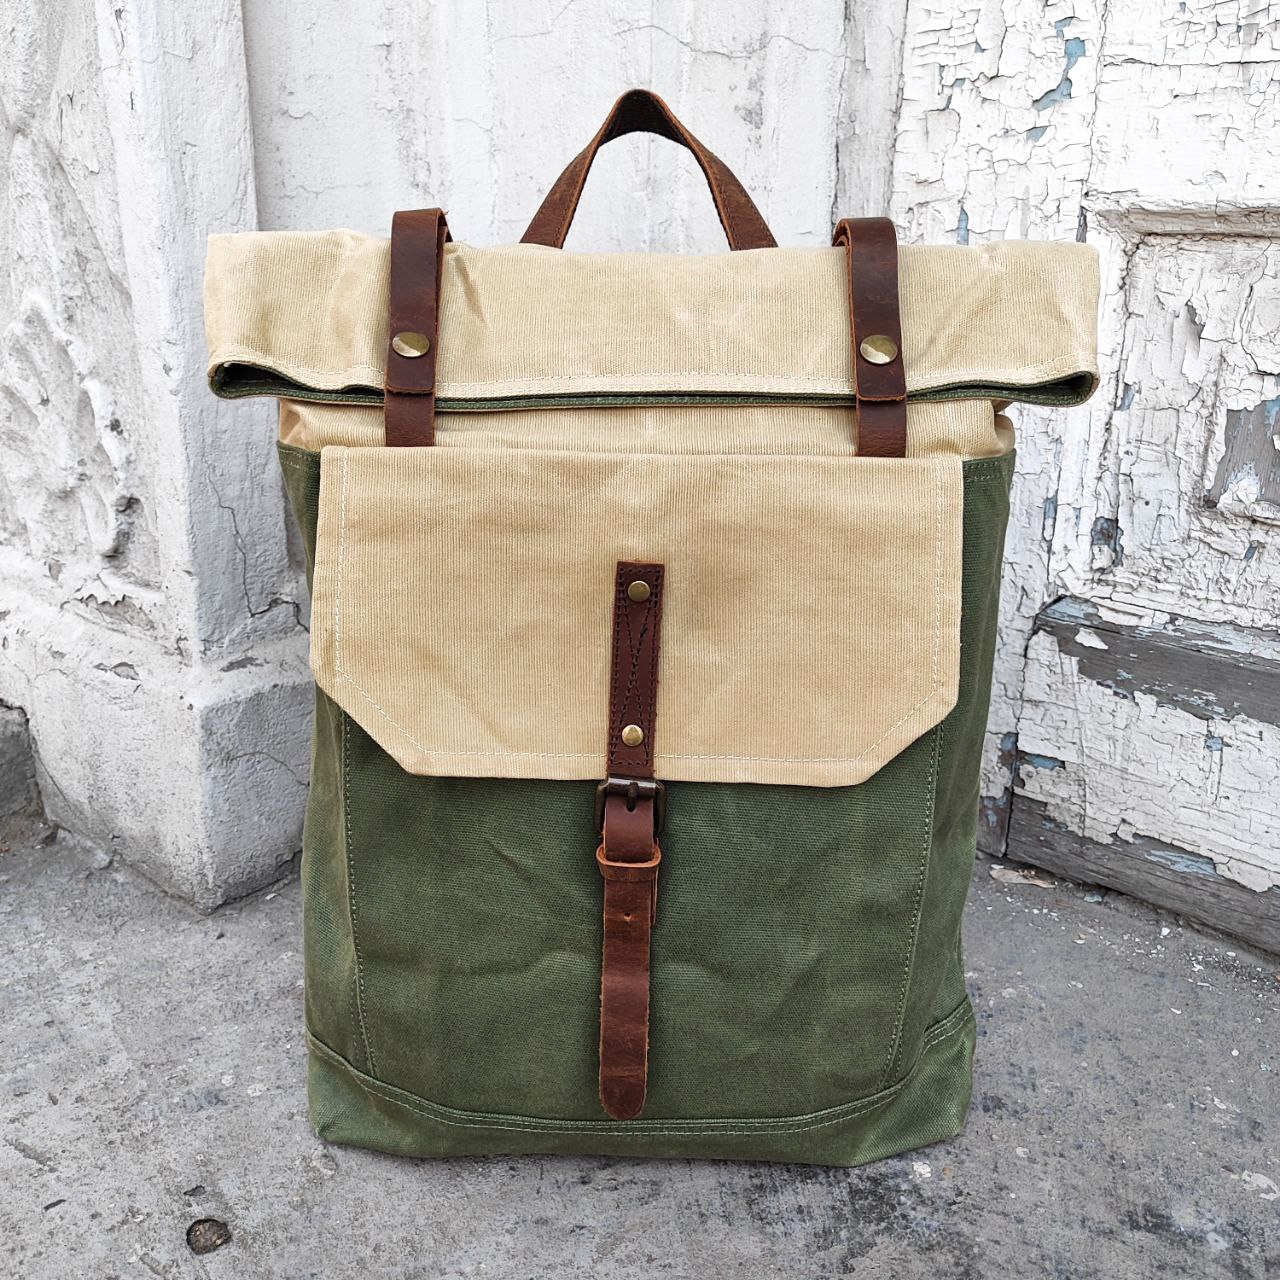 Рюкзак унисекс Orlen pack KS-03 бежевый/зеленый, 42х31х12 см